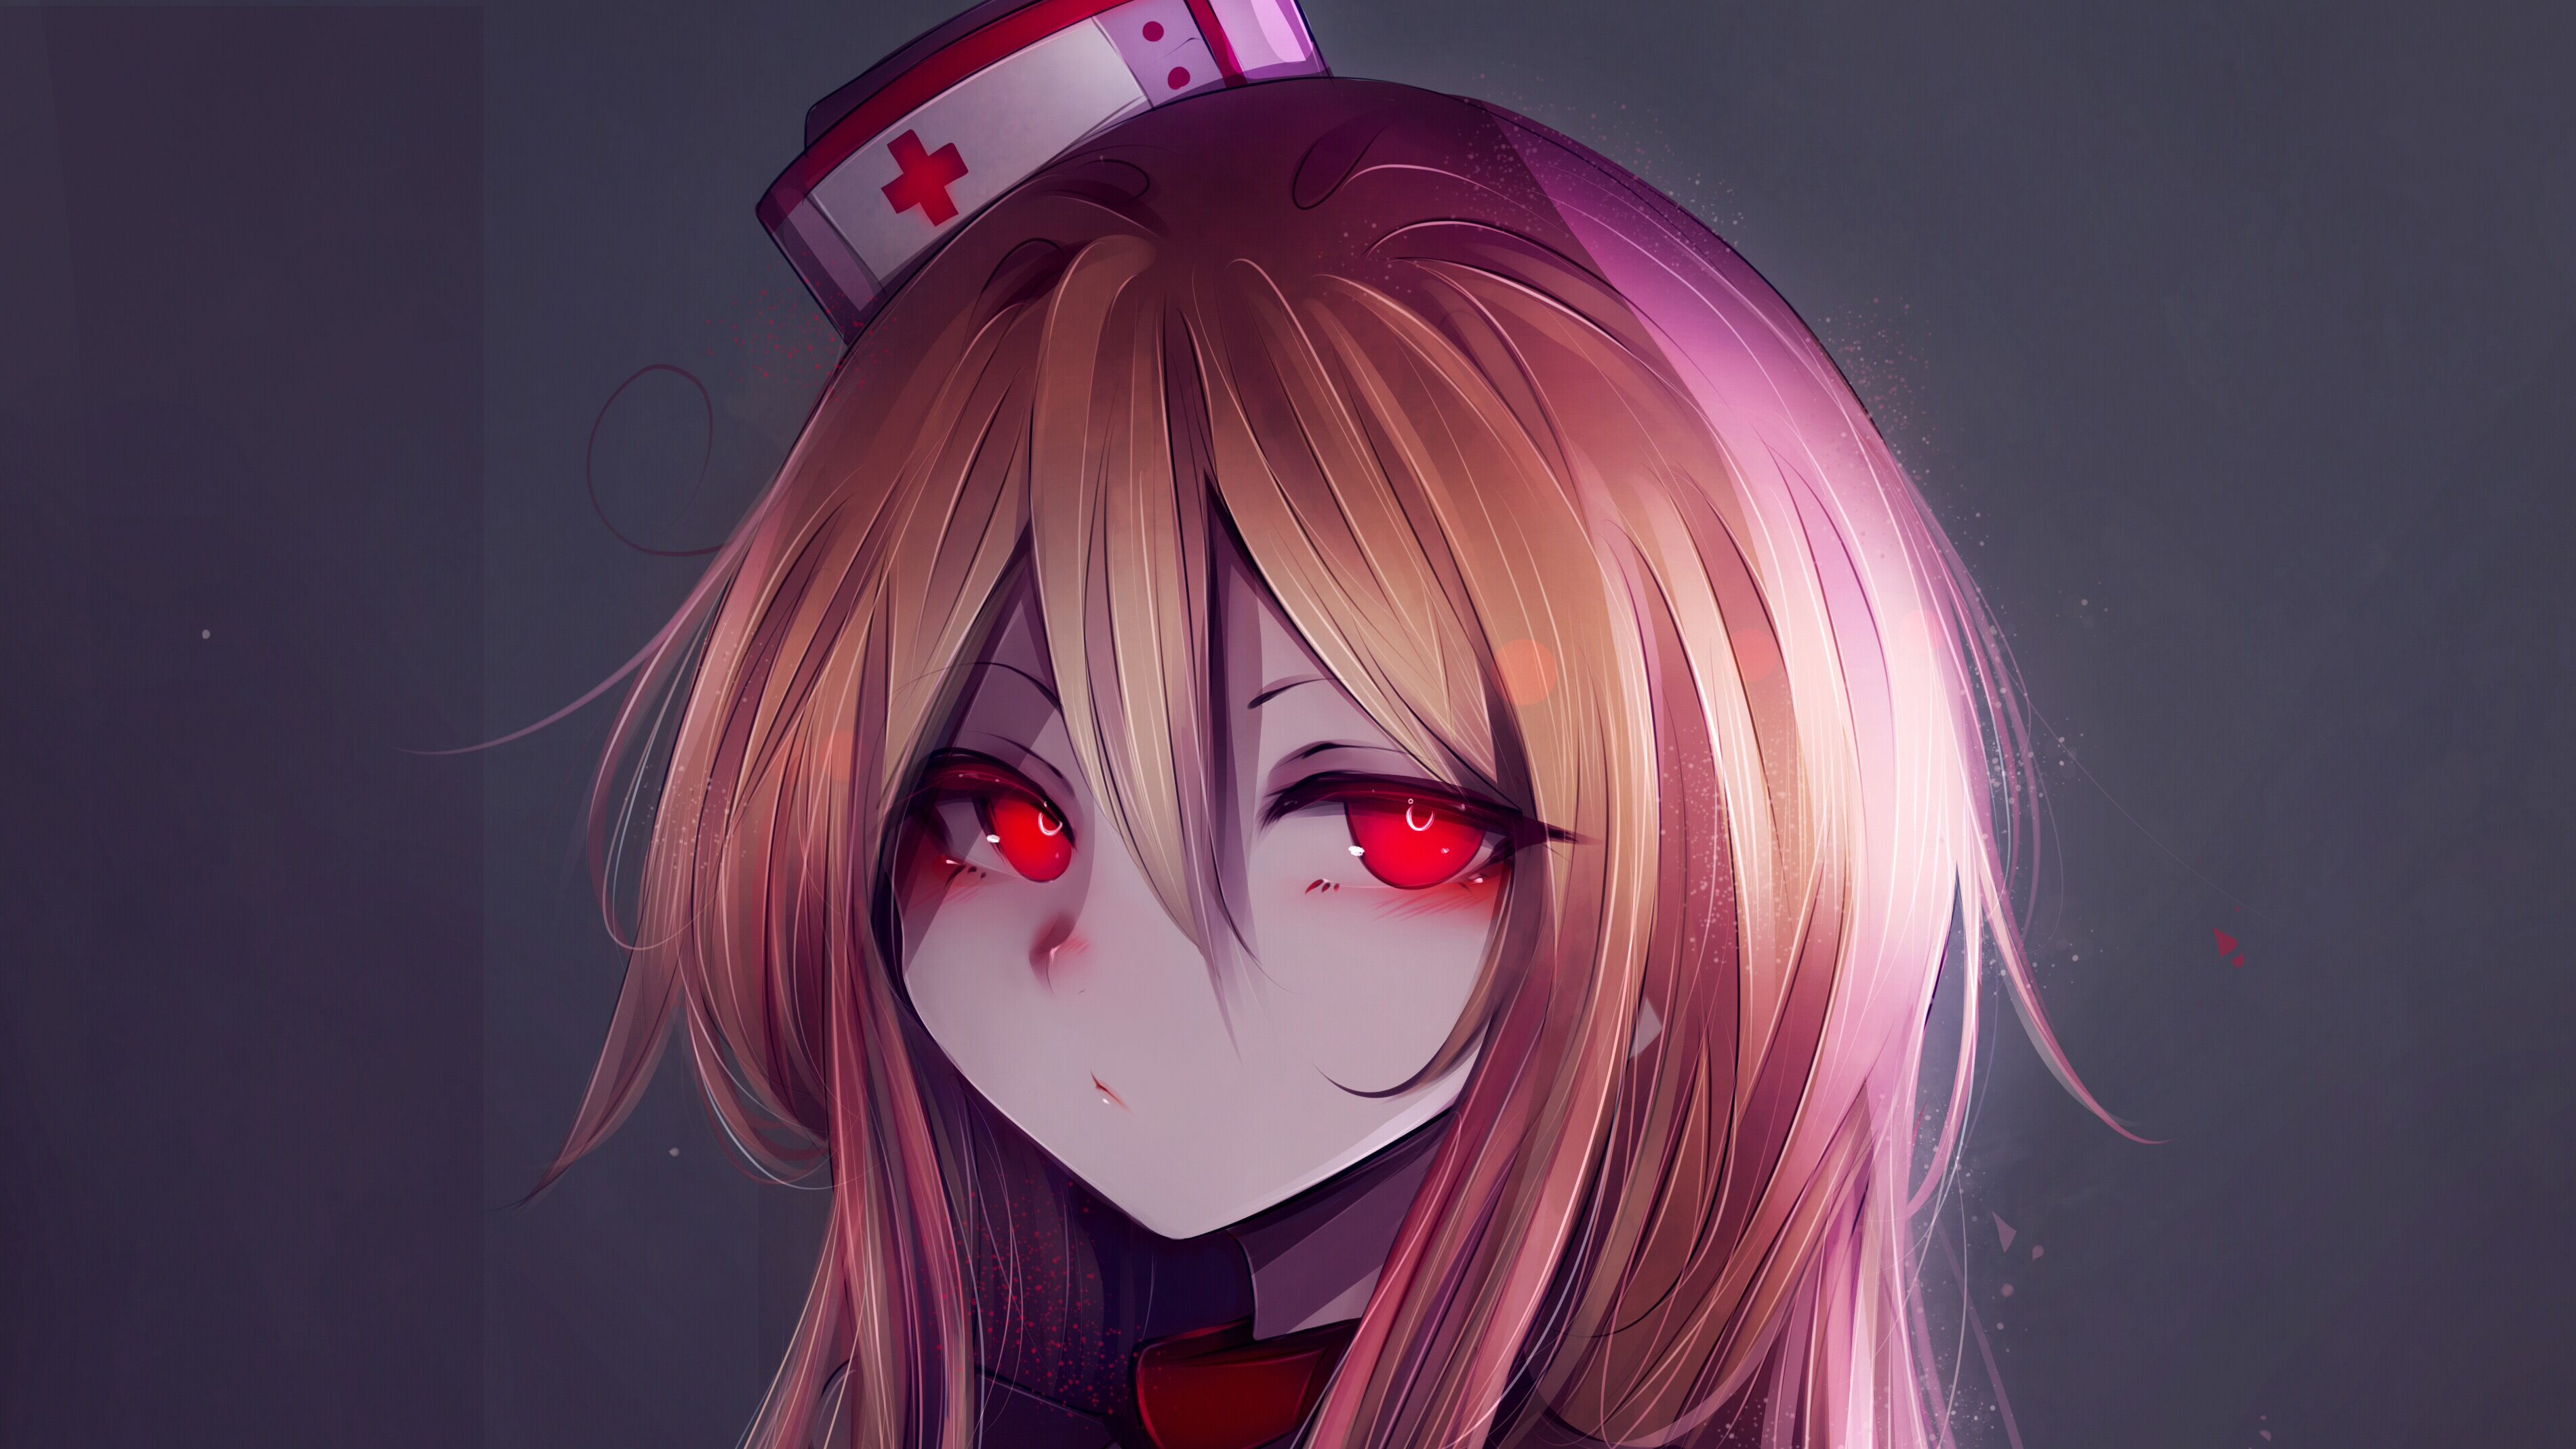 Anime nurse with red eyes - Nurse